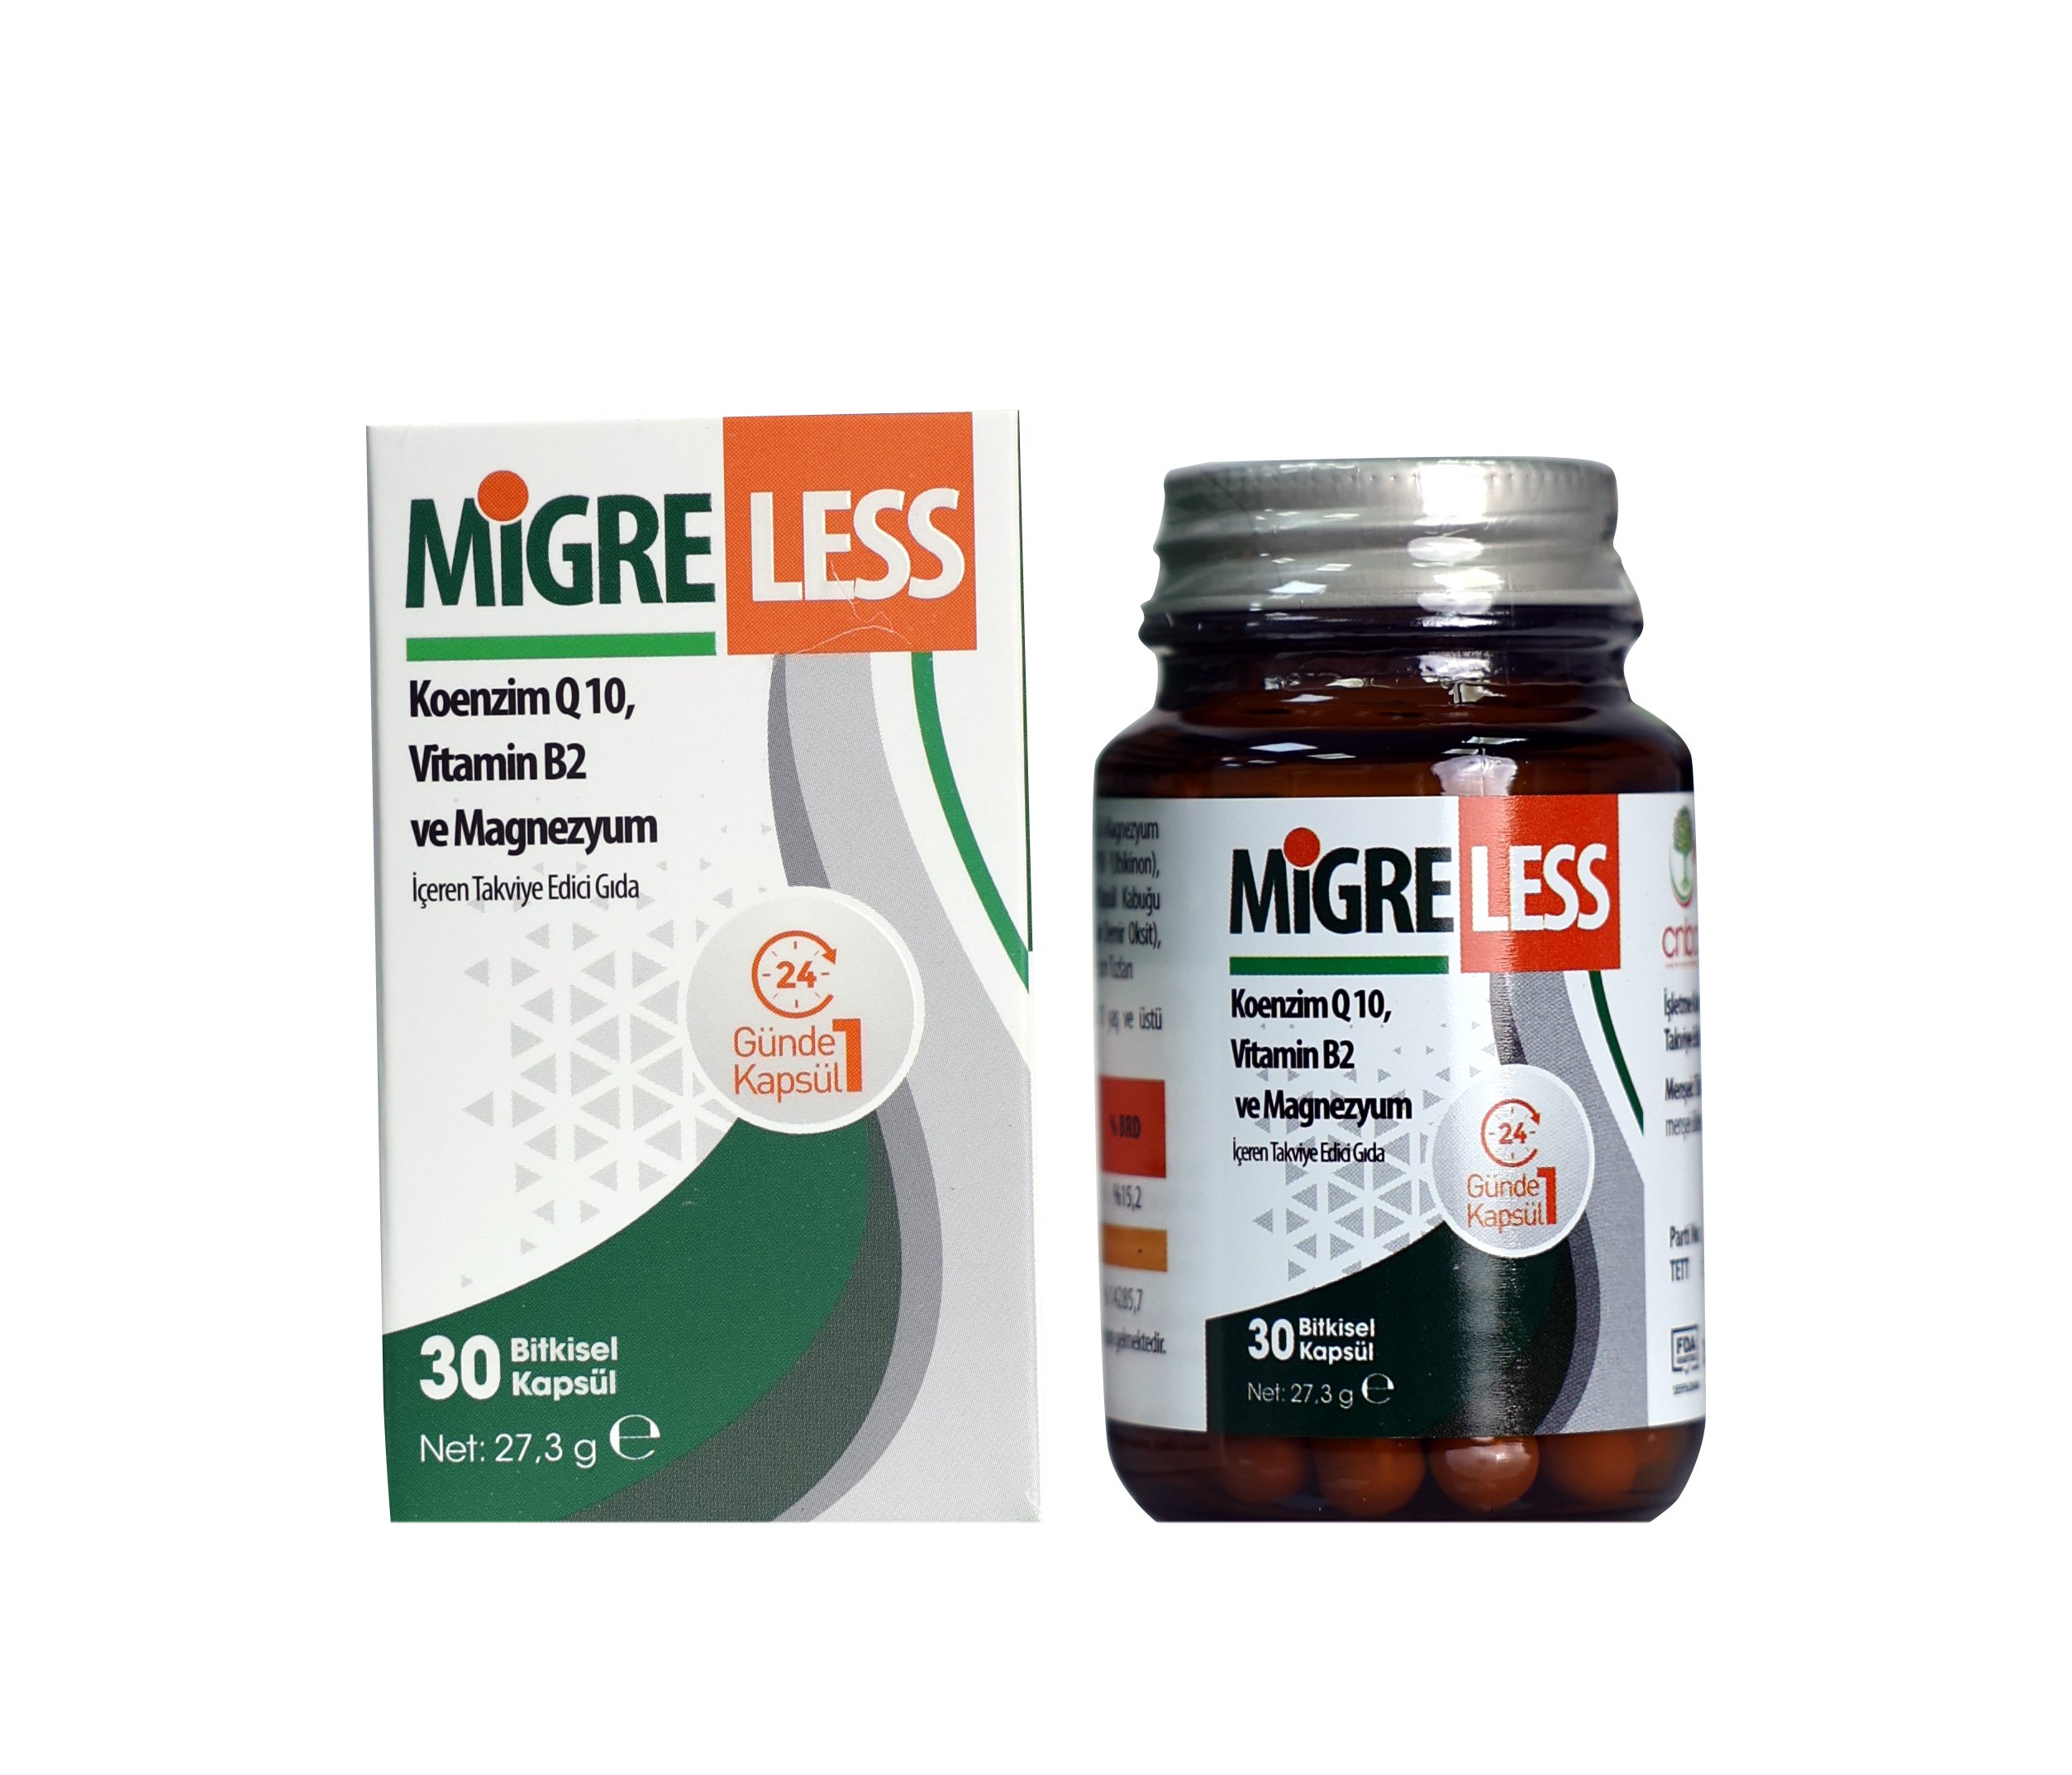 Migreless Koenzimq 10 Vitamin B2 ve Magnezyum İçeren Takviye Edici Gıda 30